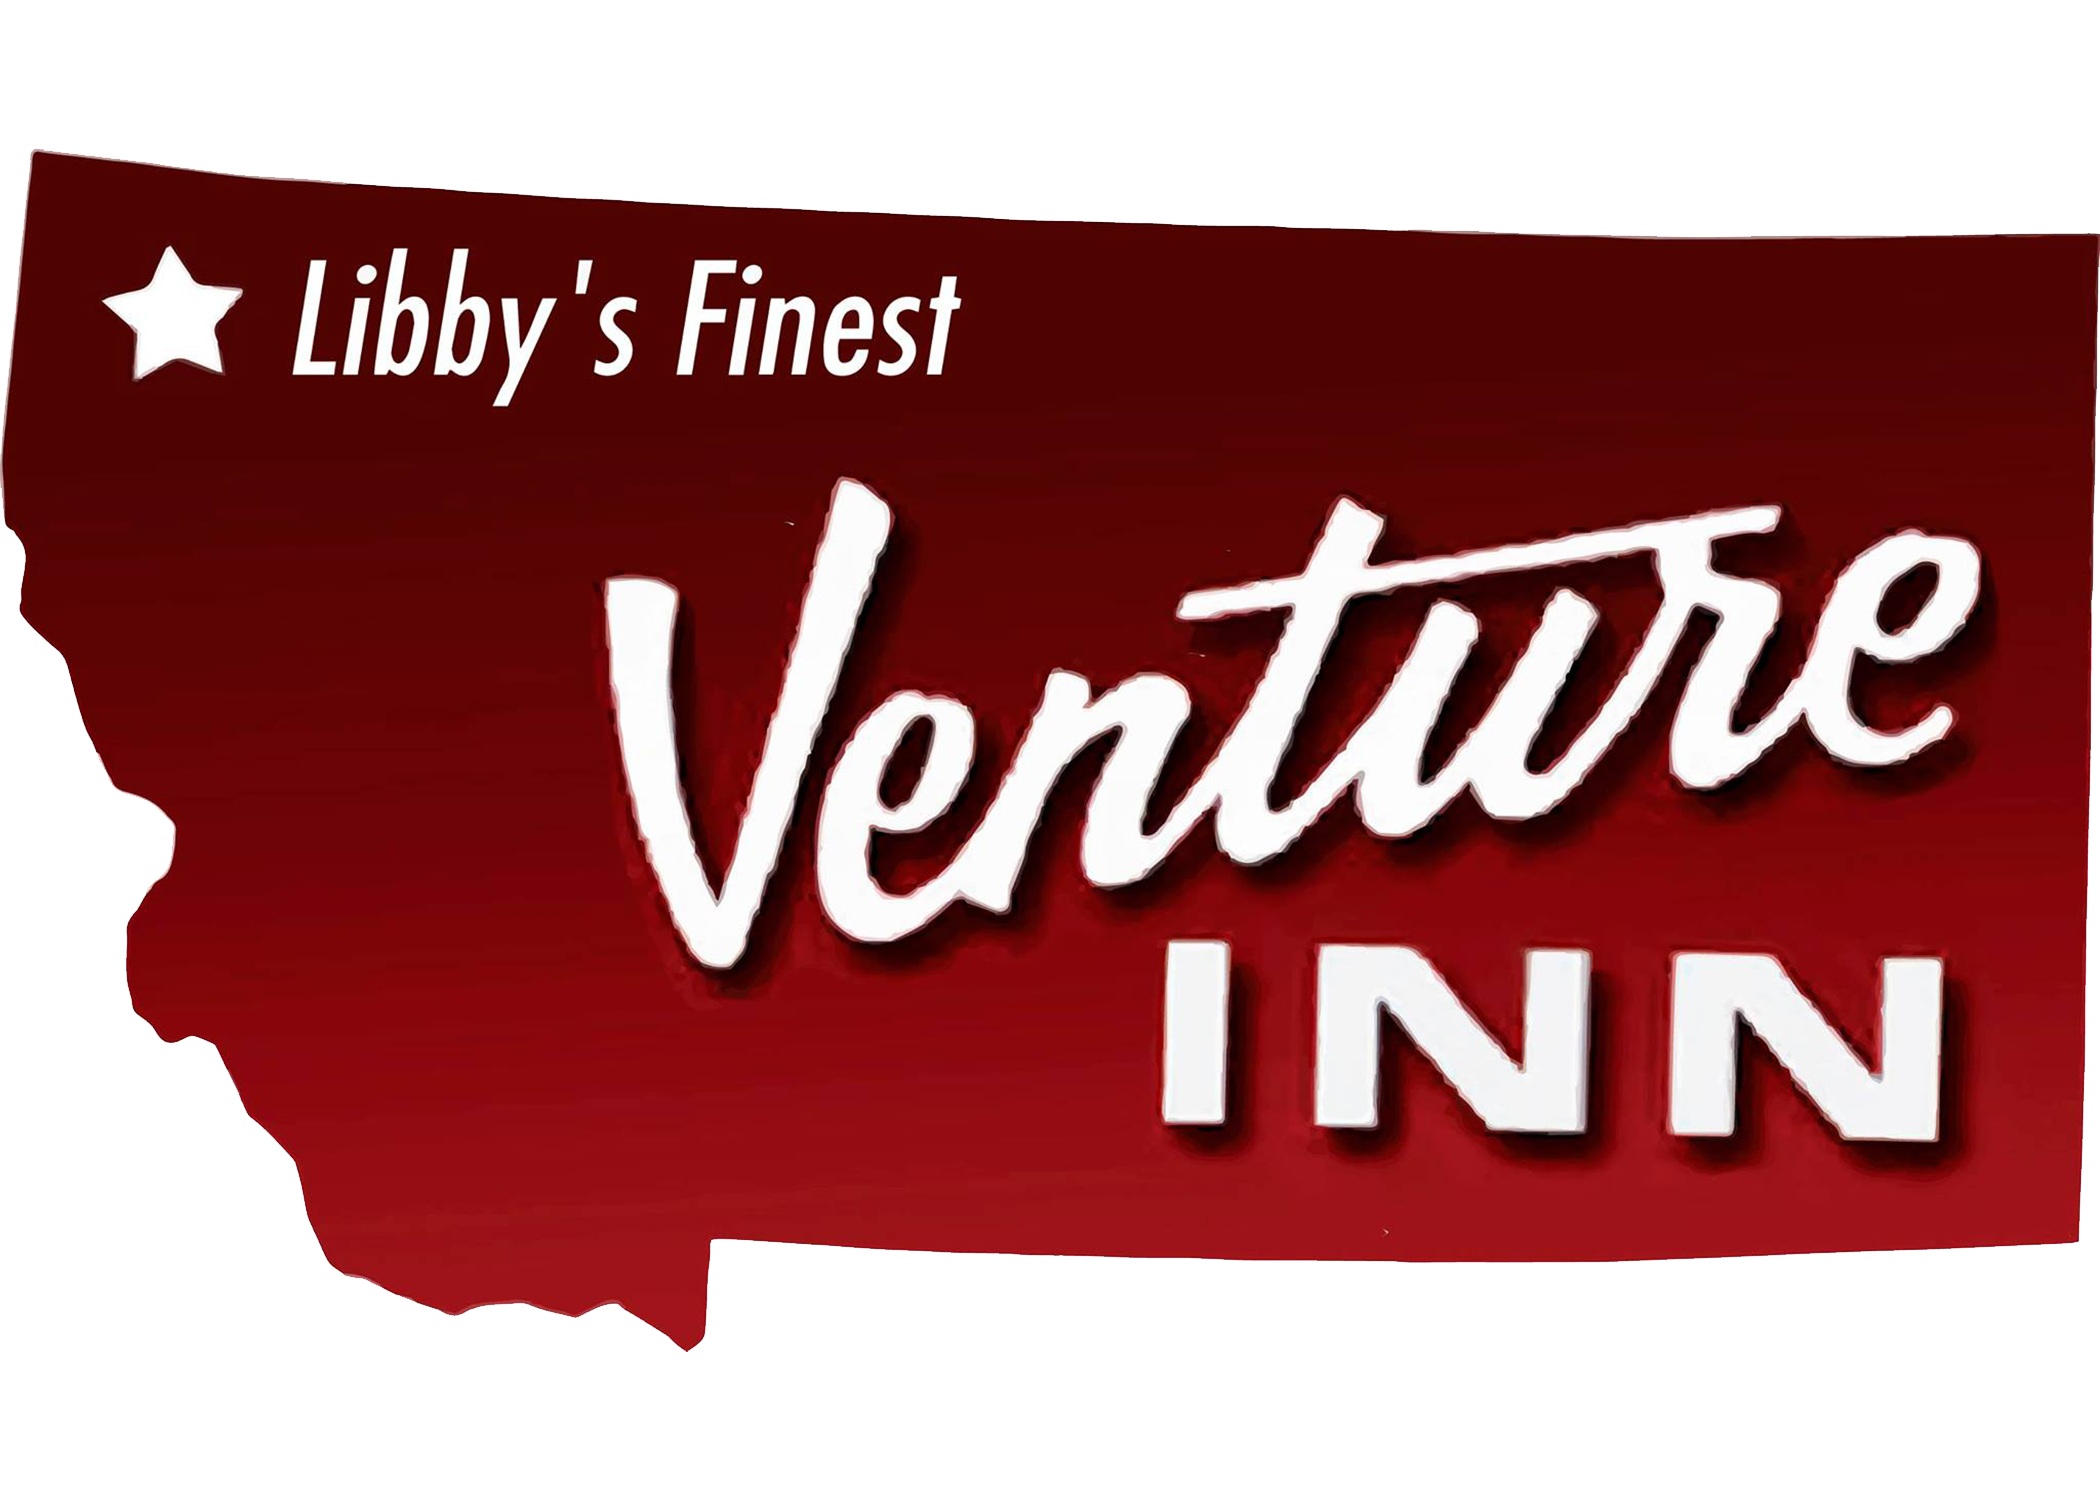 The Venture Inn